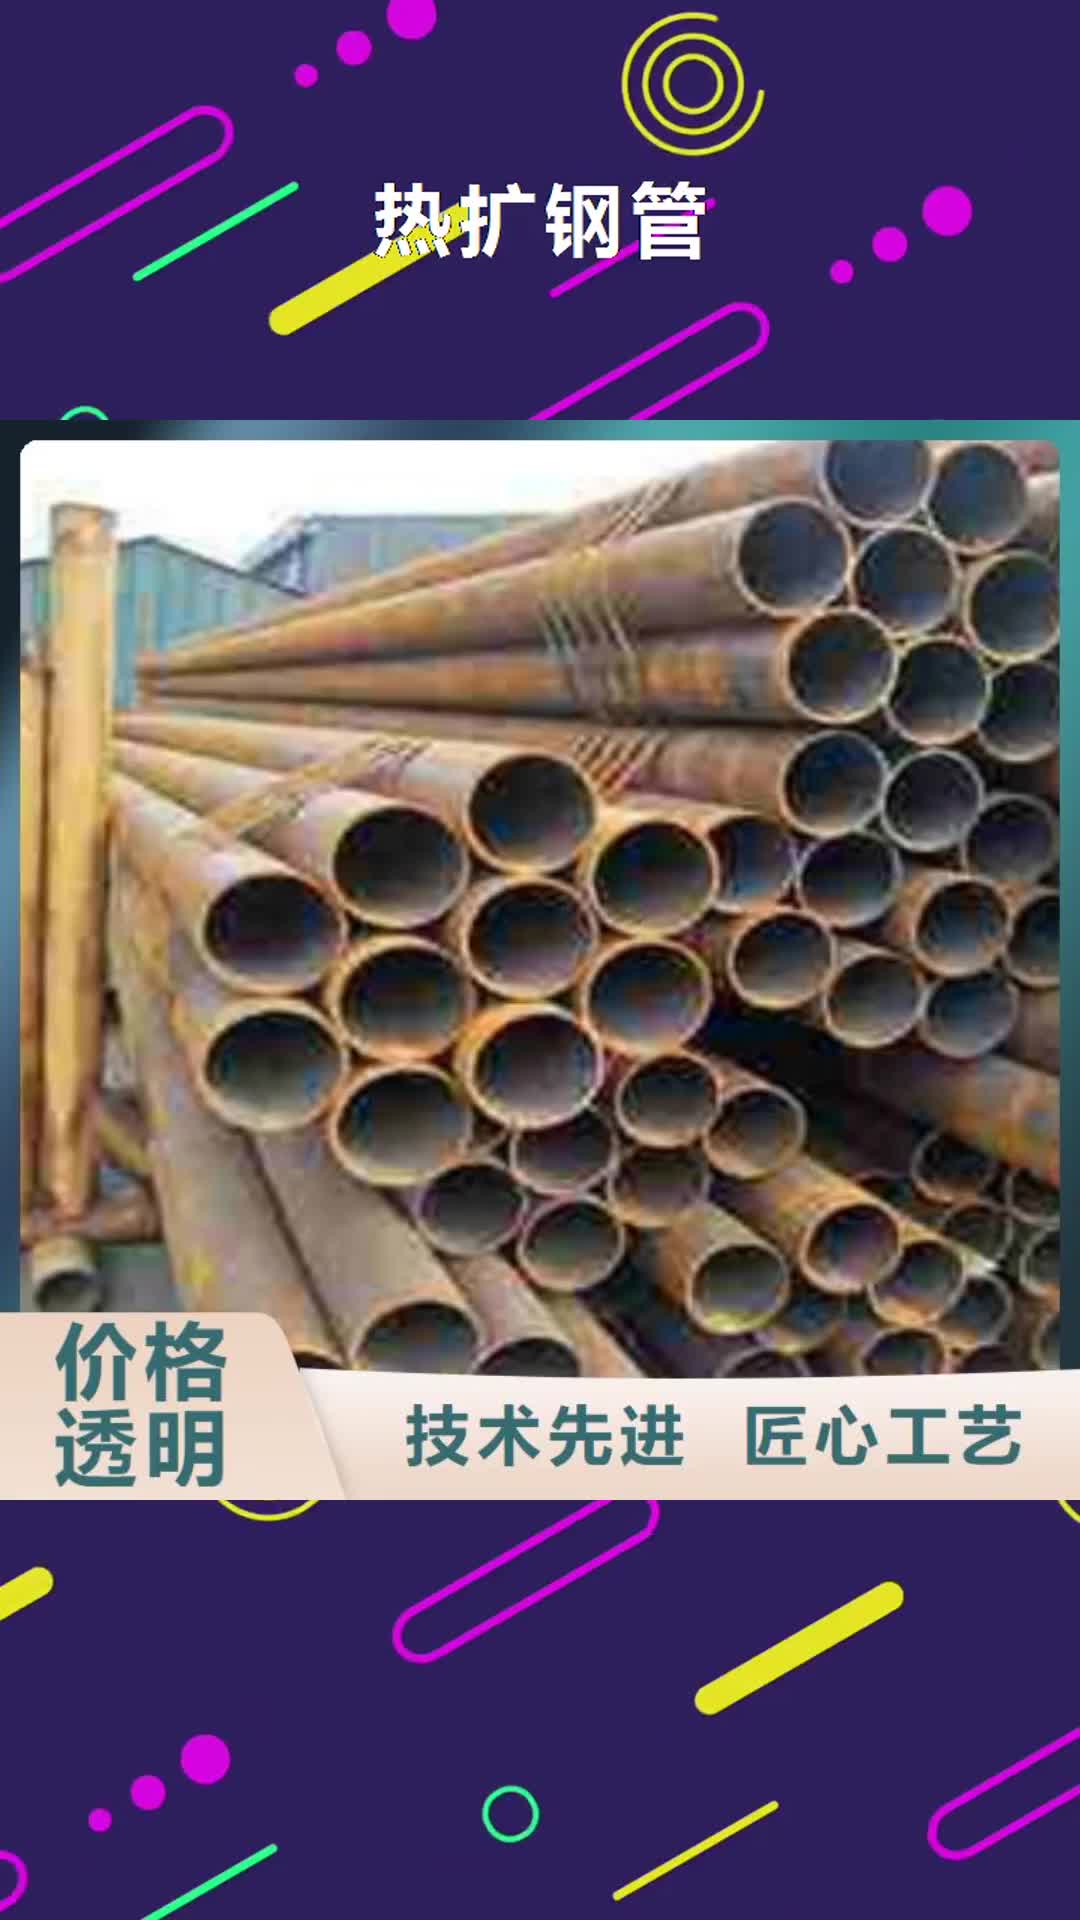 营口【热扩钢管】,防腐钢管专业生产厂家